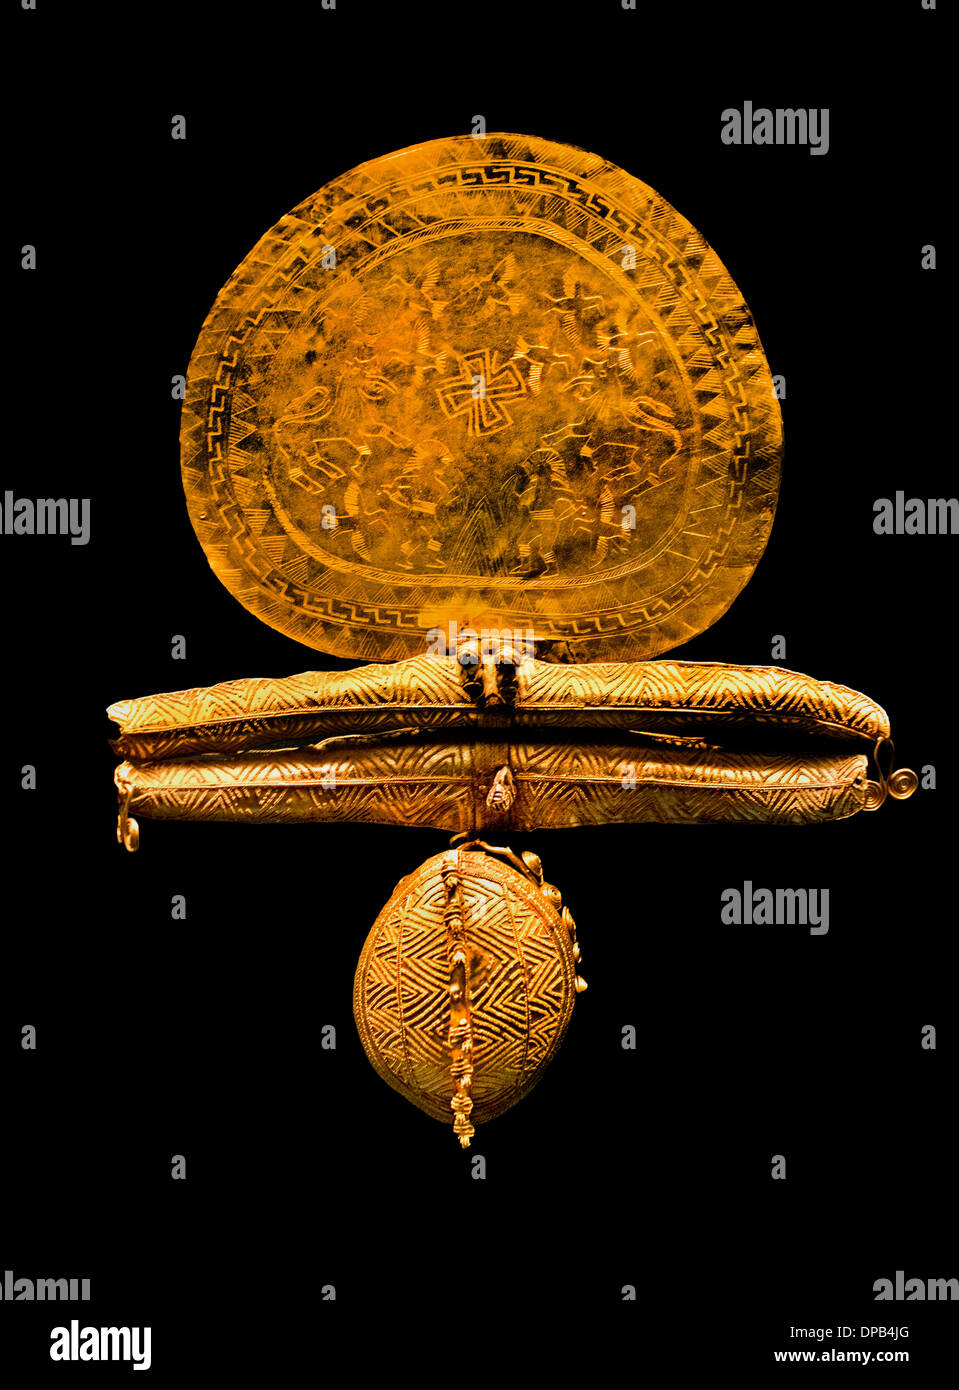 Magnifique broche disque de bijoux gravé - guerriers dans un duel lions et oiseaux bijoux d'or étrusque 7 siècle BC Etruria Italie Banque D'Images